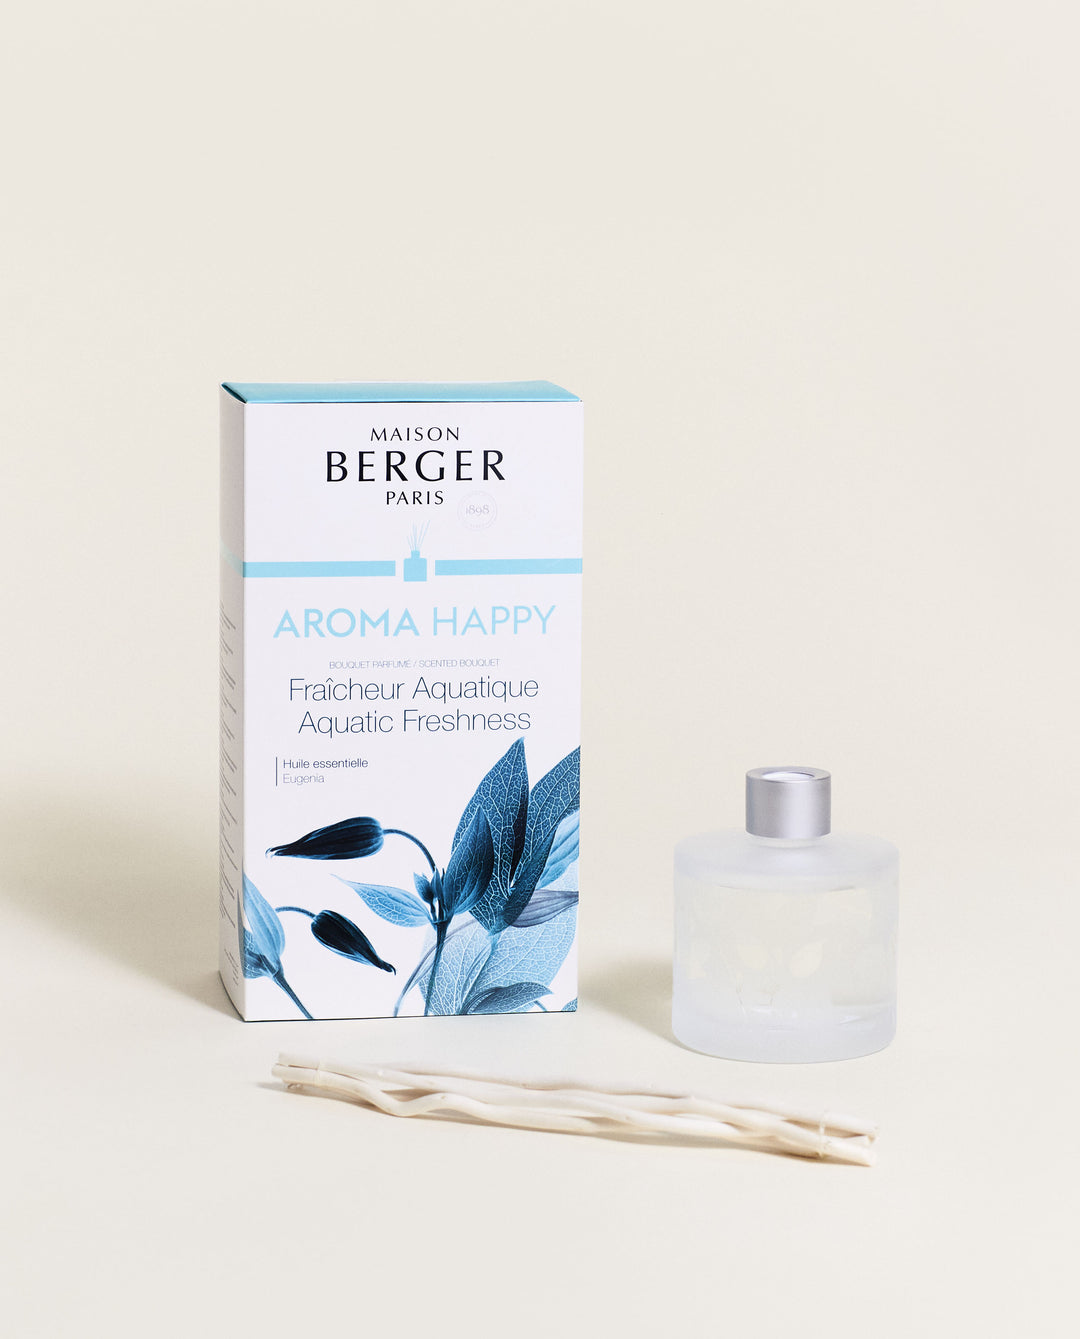 Aroma Happy Raumduft Diffuser Lampe Berger - Maison Berger offizieller Onlineshop DE - AT